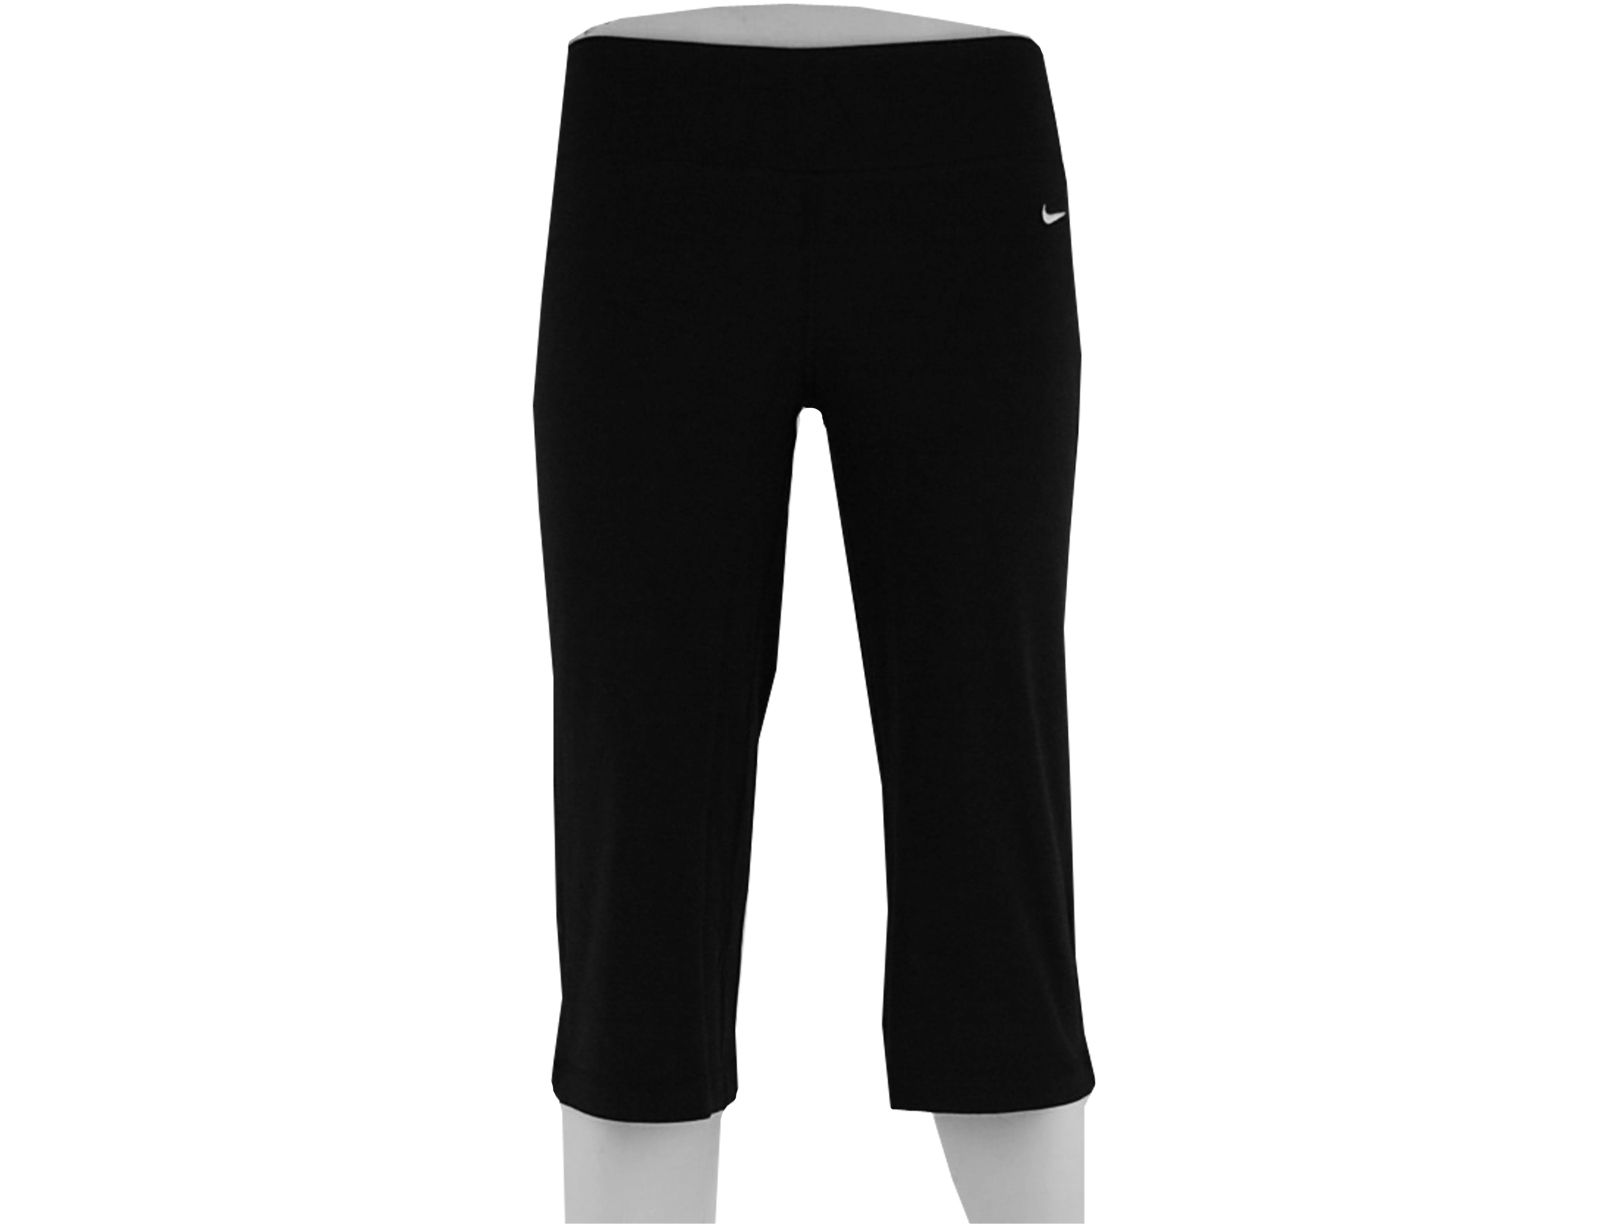 Avantisport - Nike - Be Strong Dri-fit Cotton Capri - Black